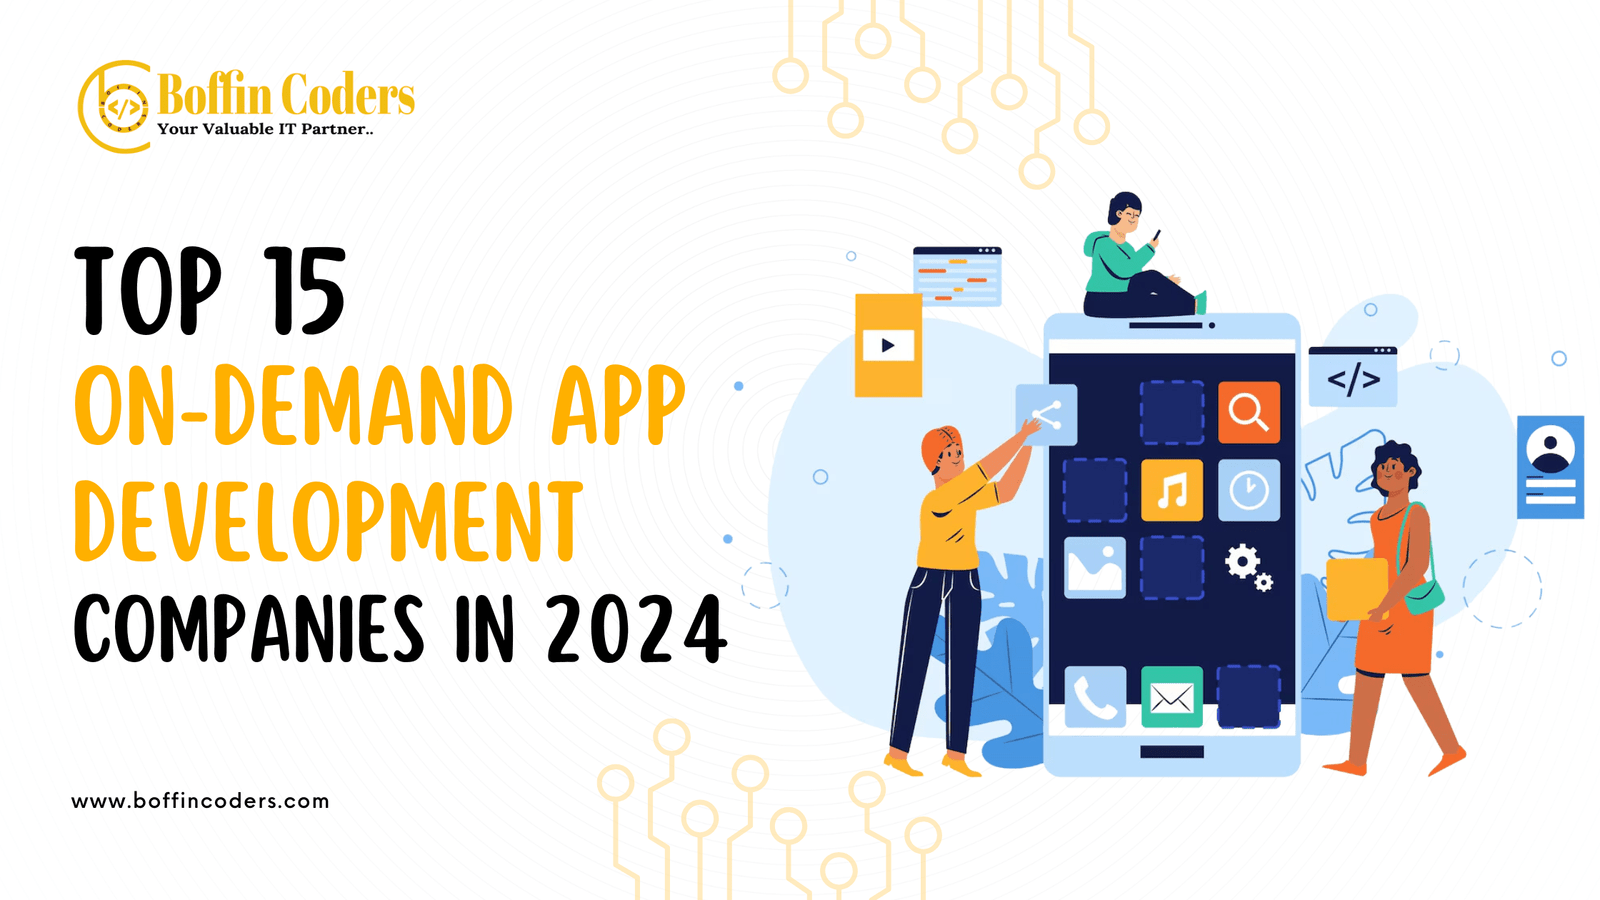 Top 15 On-Demand App Development Companies in 2024